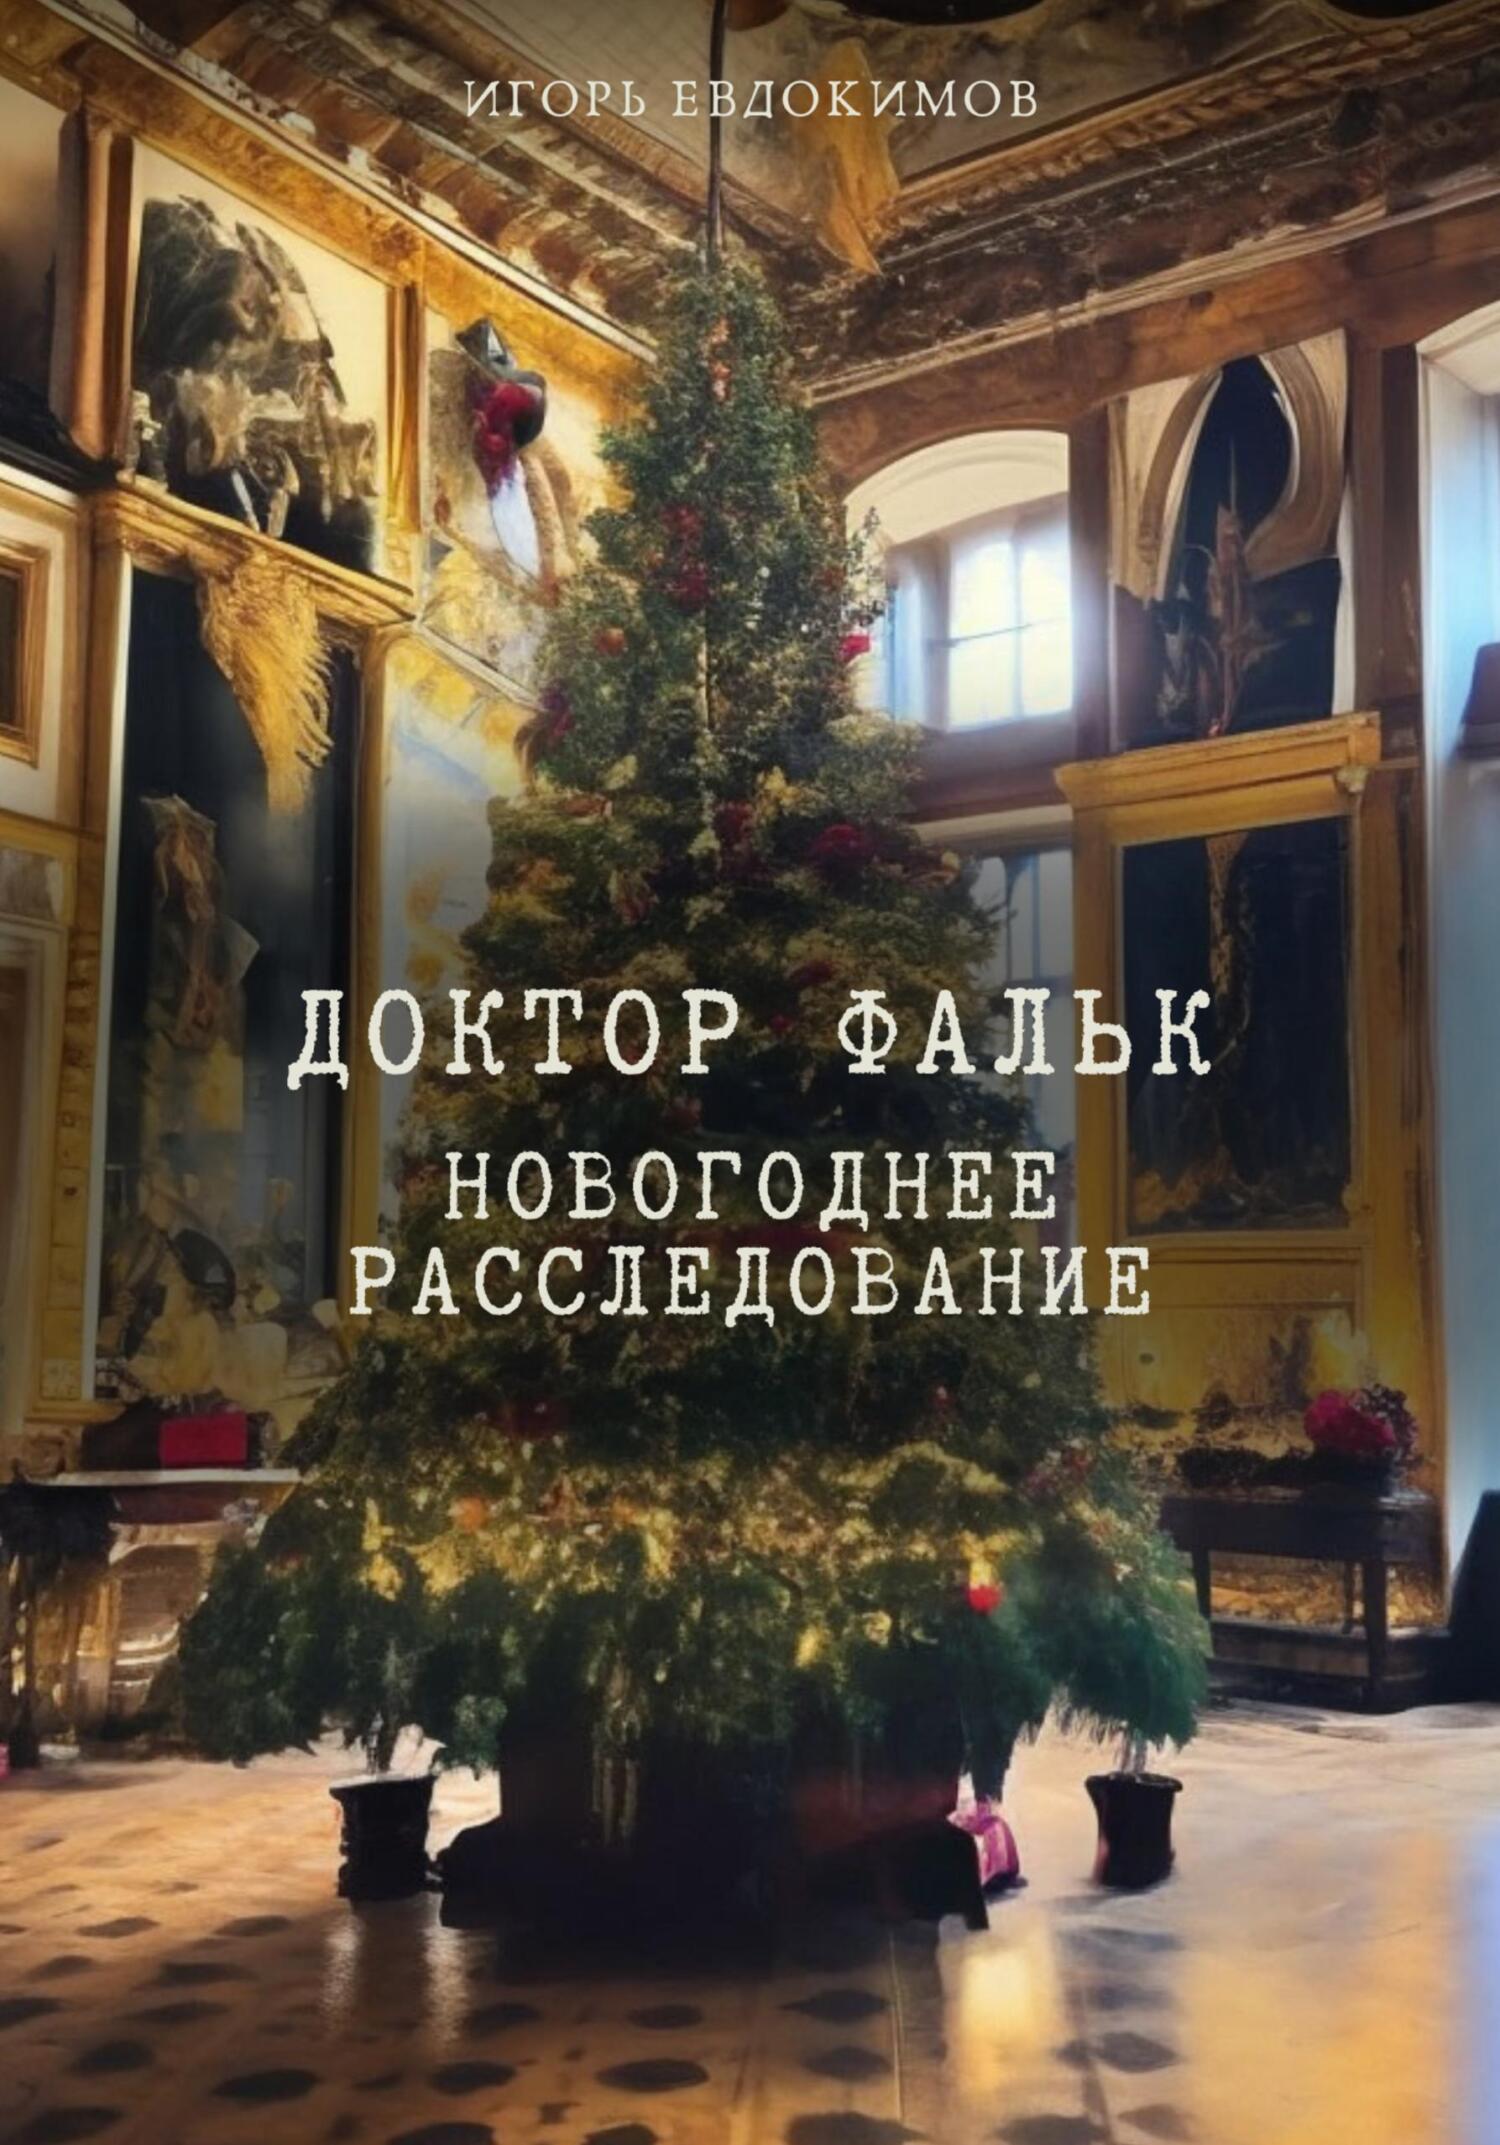 Новогоднее расследование - Игорь Евдокимов